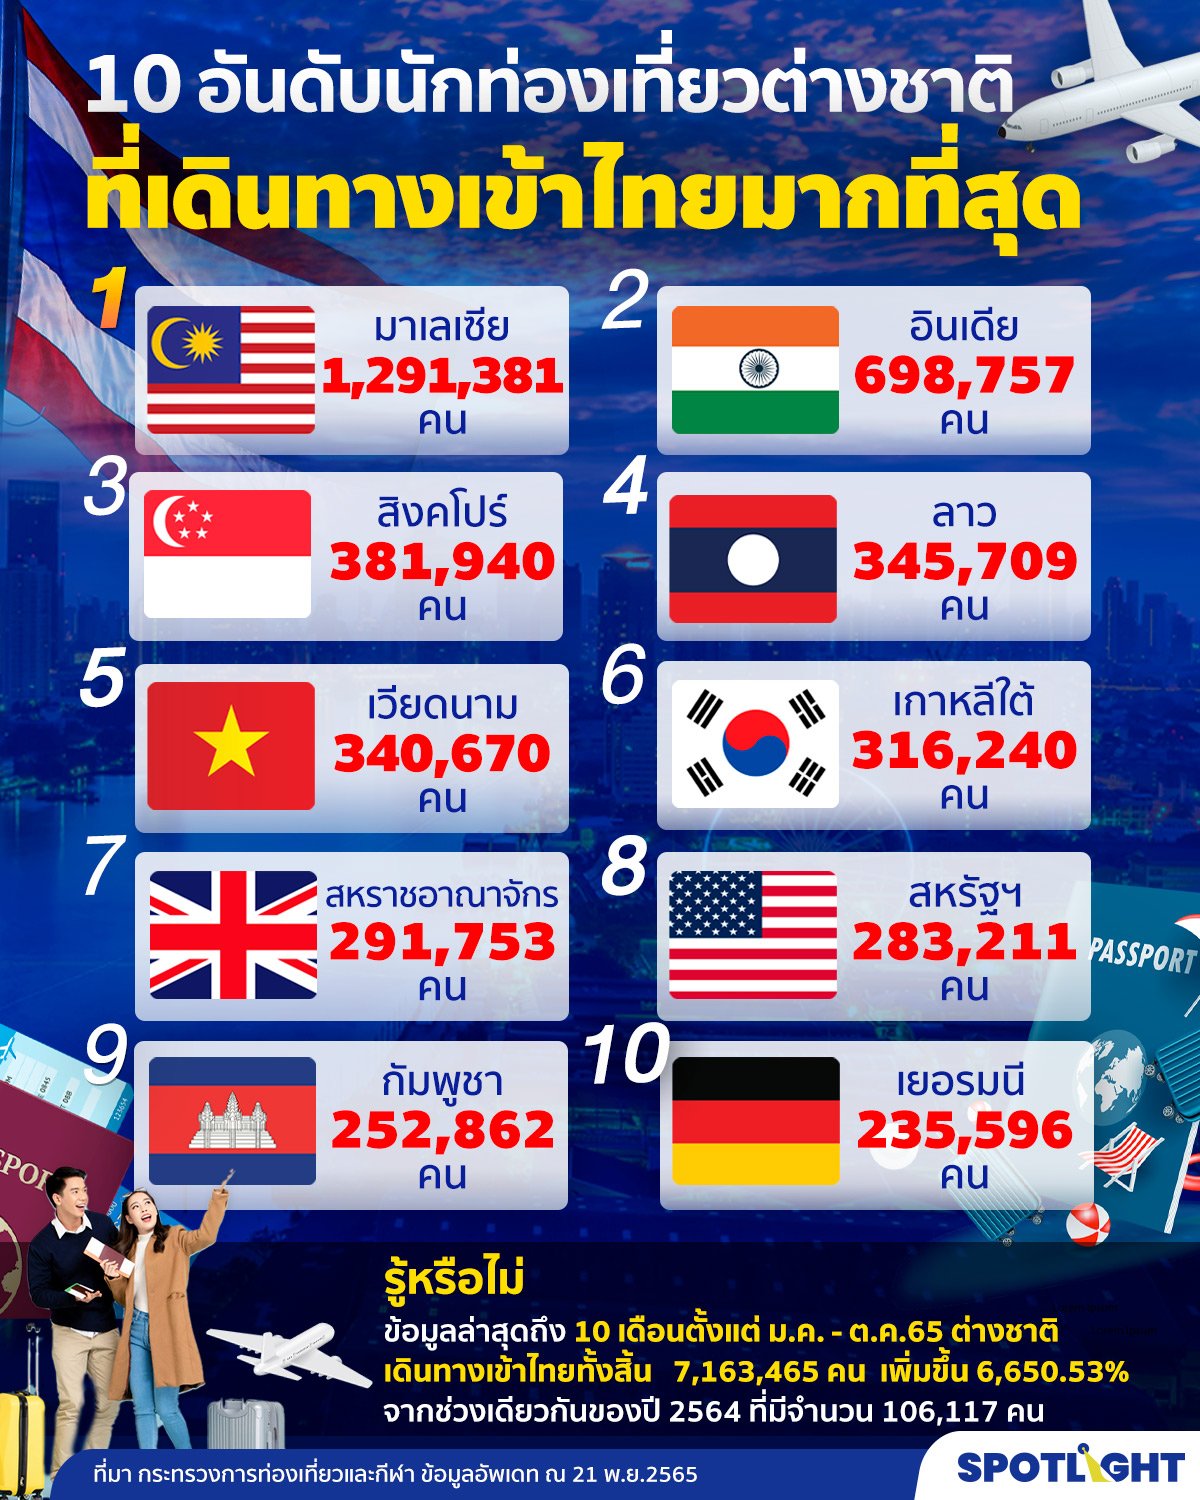 10 อันดับต่างชาติเข้าไทยมากที่สุด